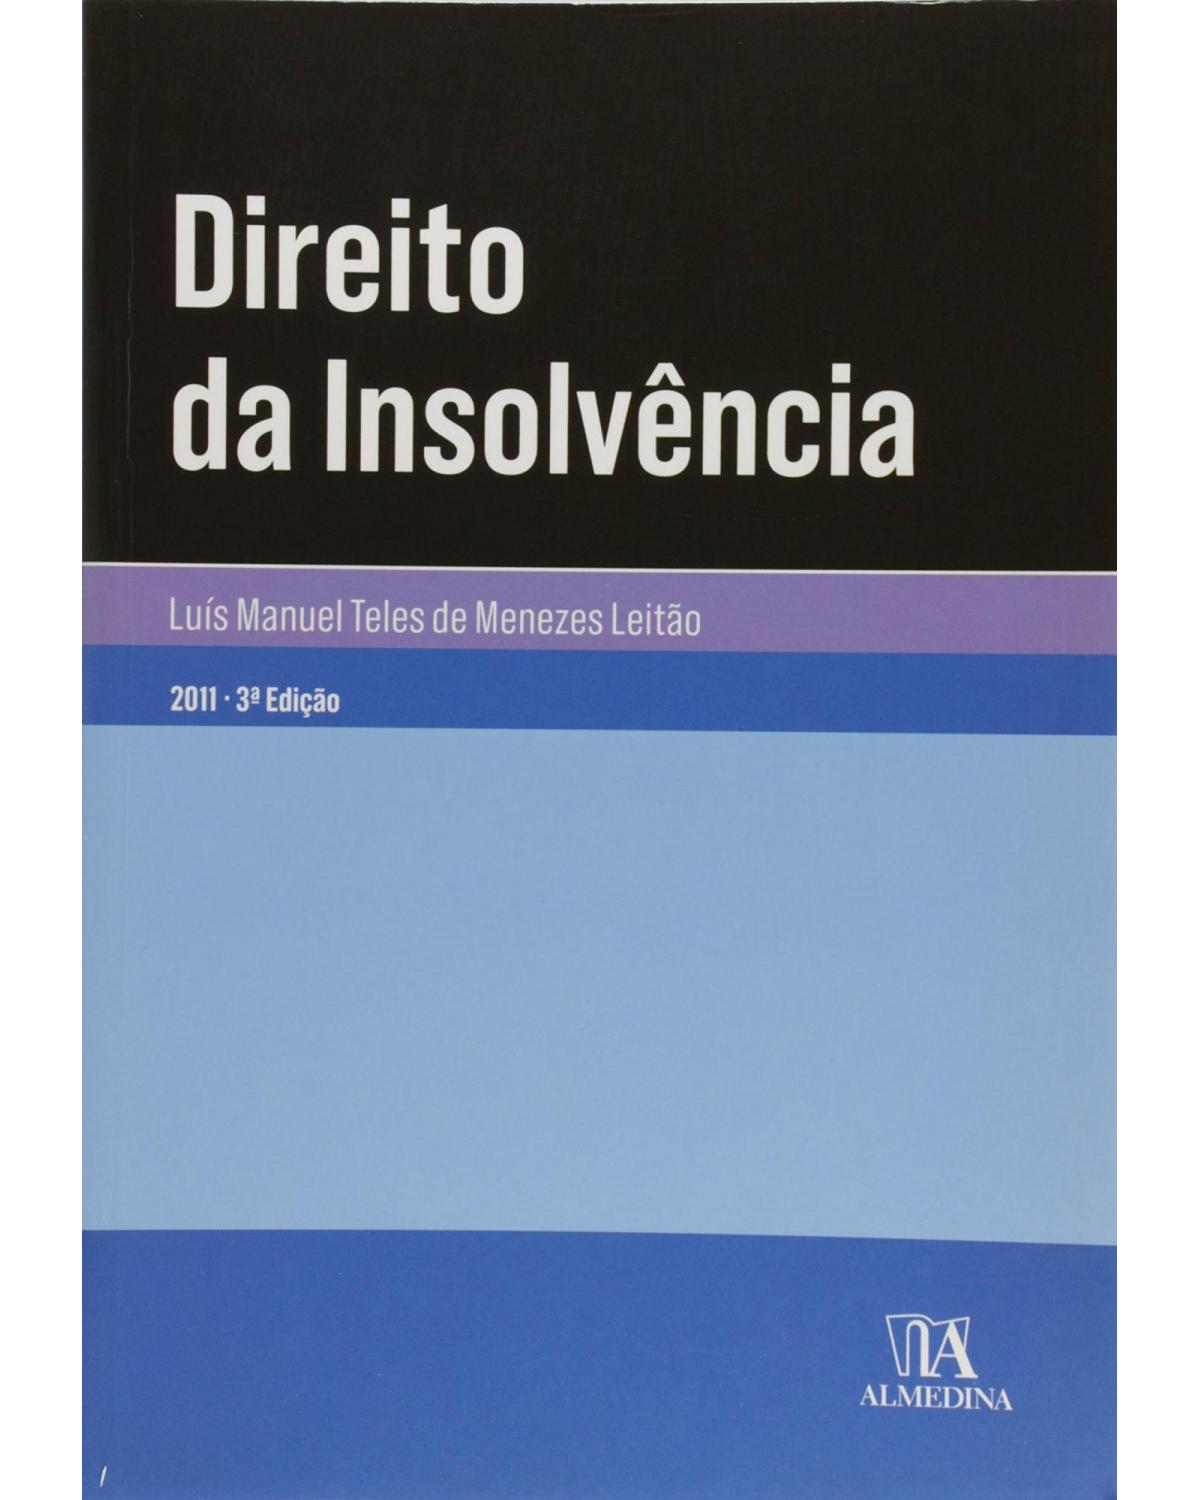 Direito da insolvência - 3ª Edição | 2011